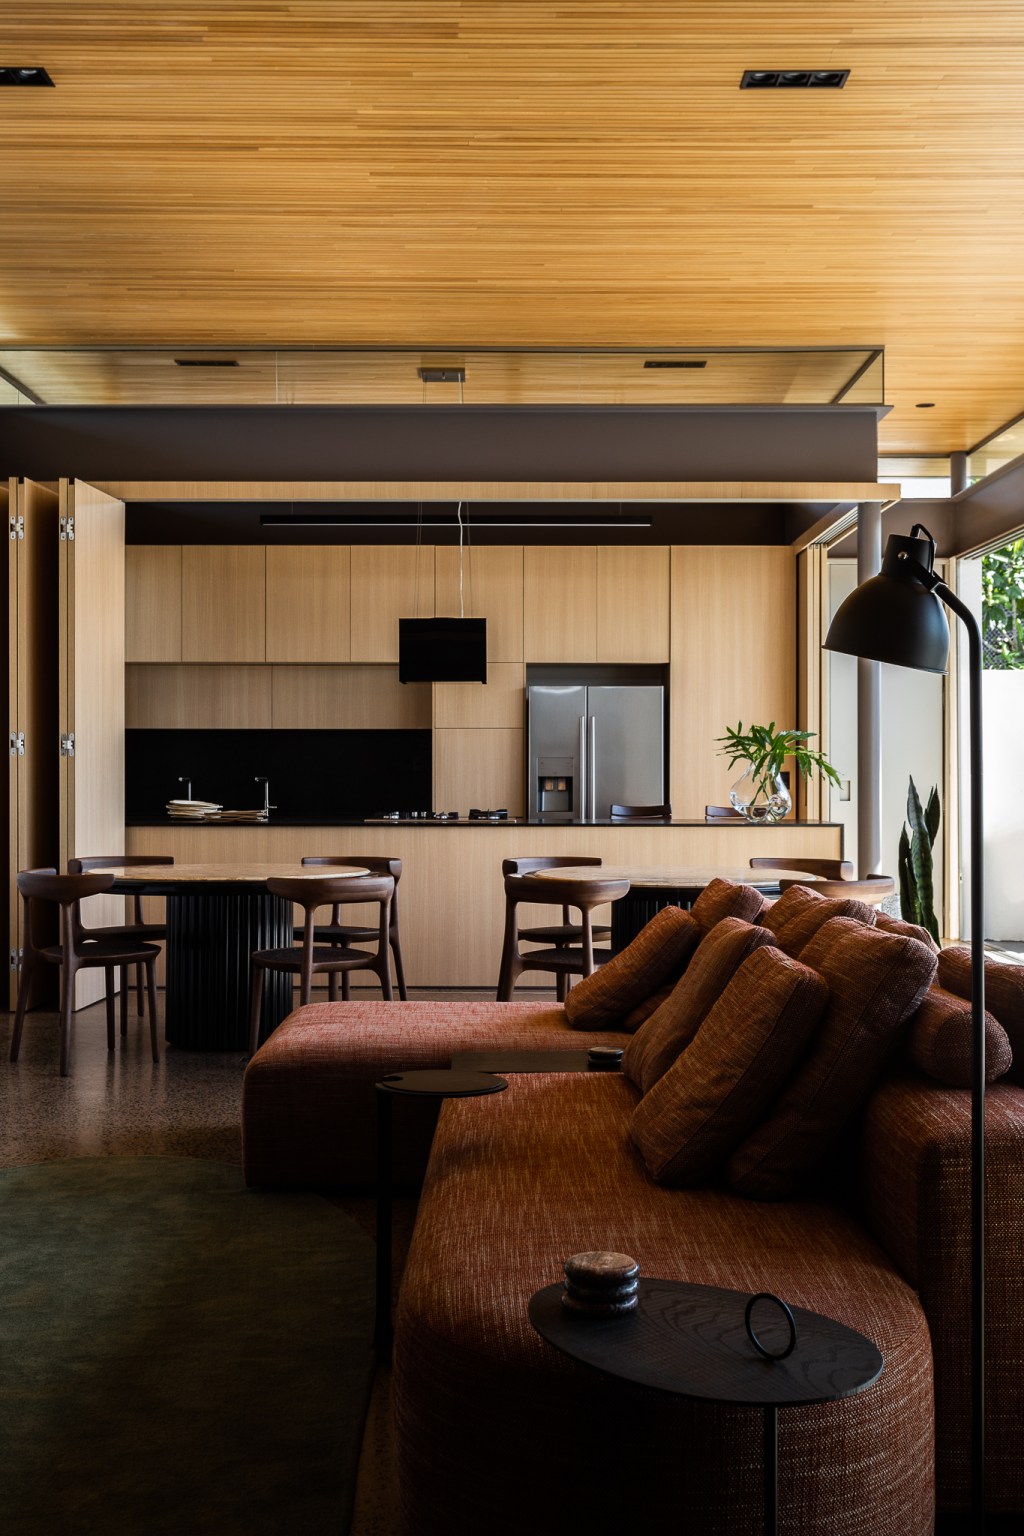 Casa no Triângulo Mineiro de 268 m² tem projeto assinado por Studio Porto